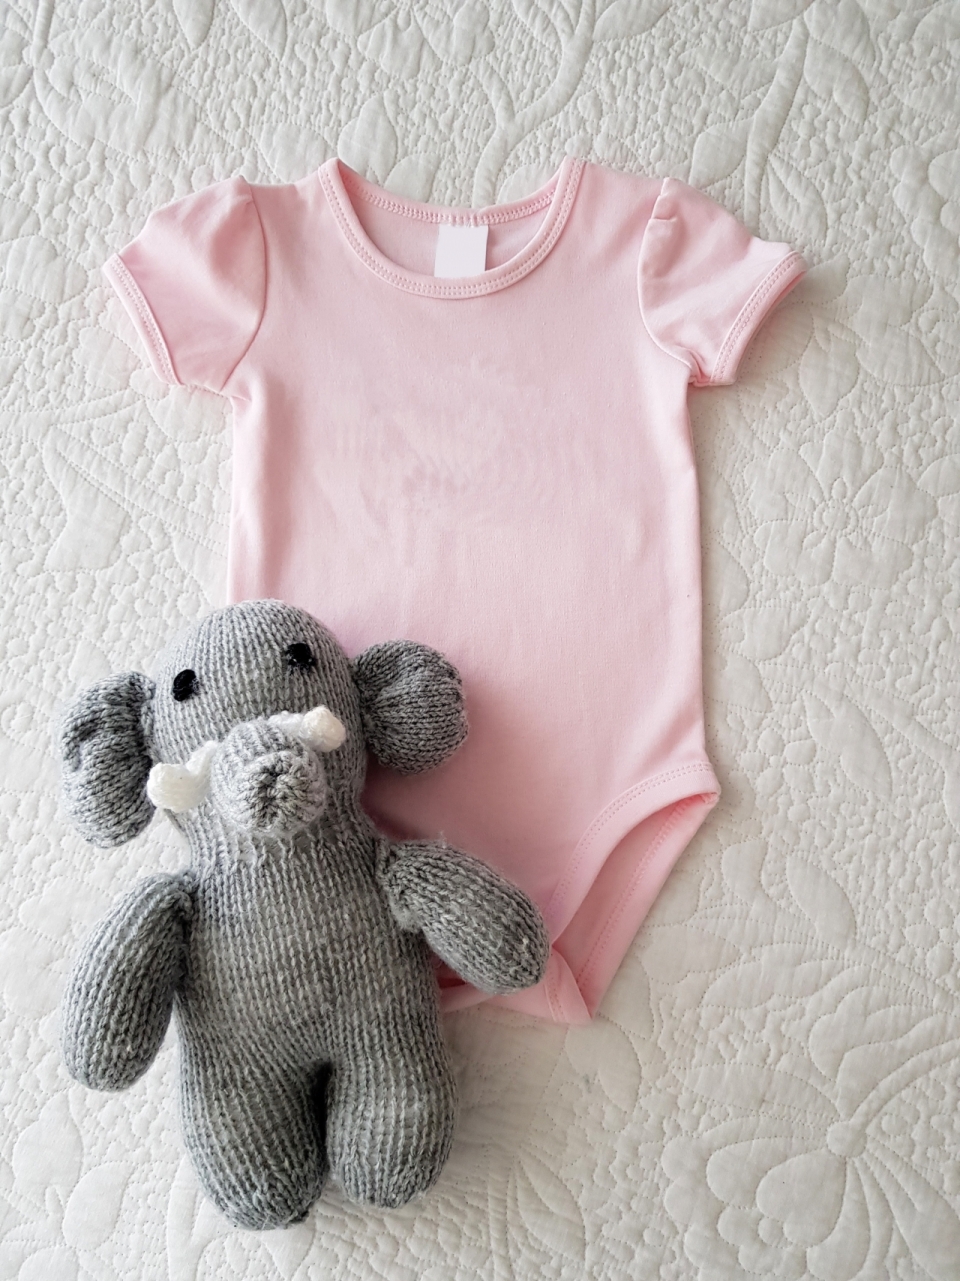 室内床铺灰色大象玩偶粉色婴儿服